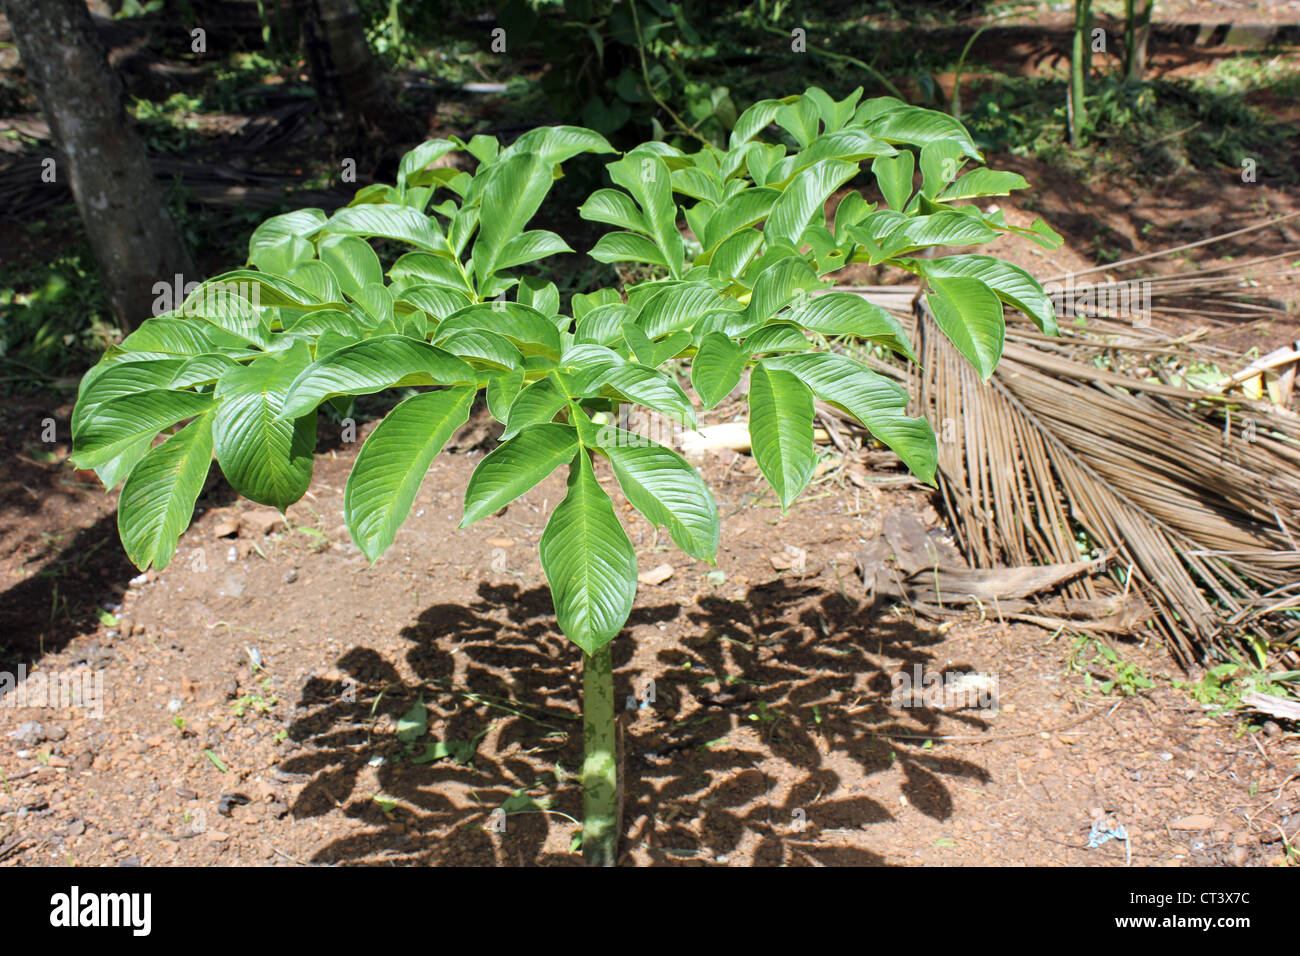 Plant of Elephant foot Yam or Amorphophallus paeoniifolius Stock Photo